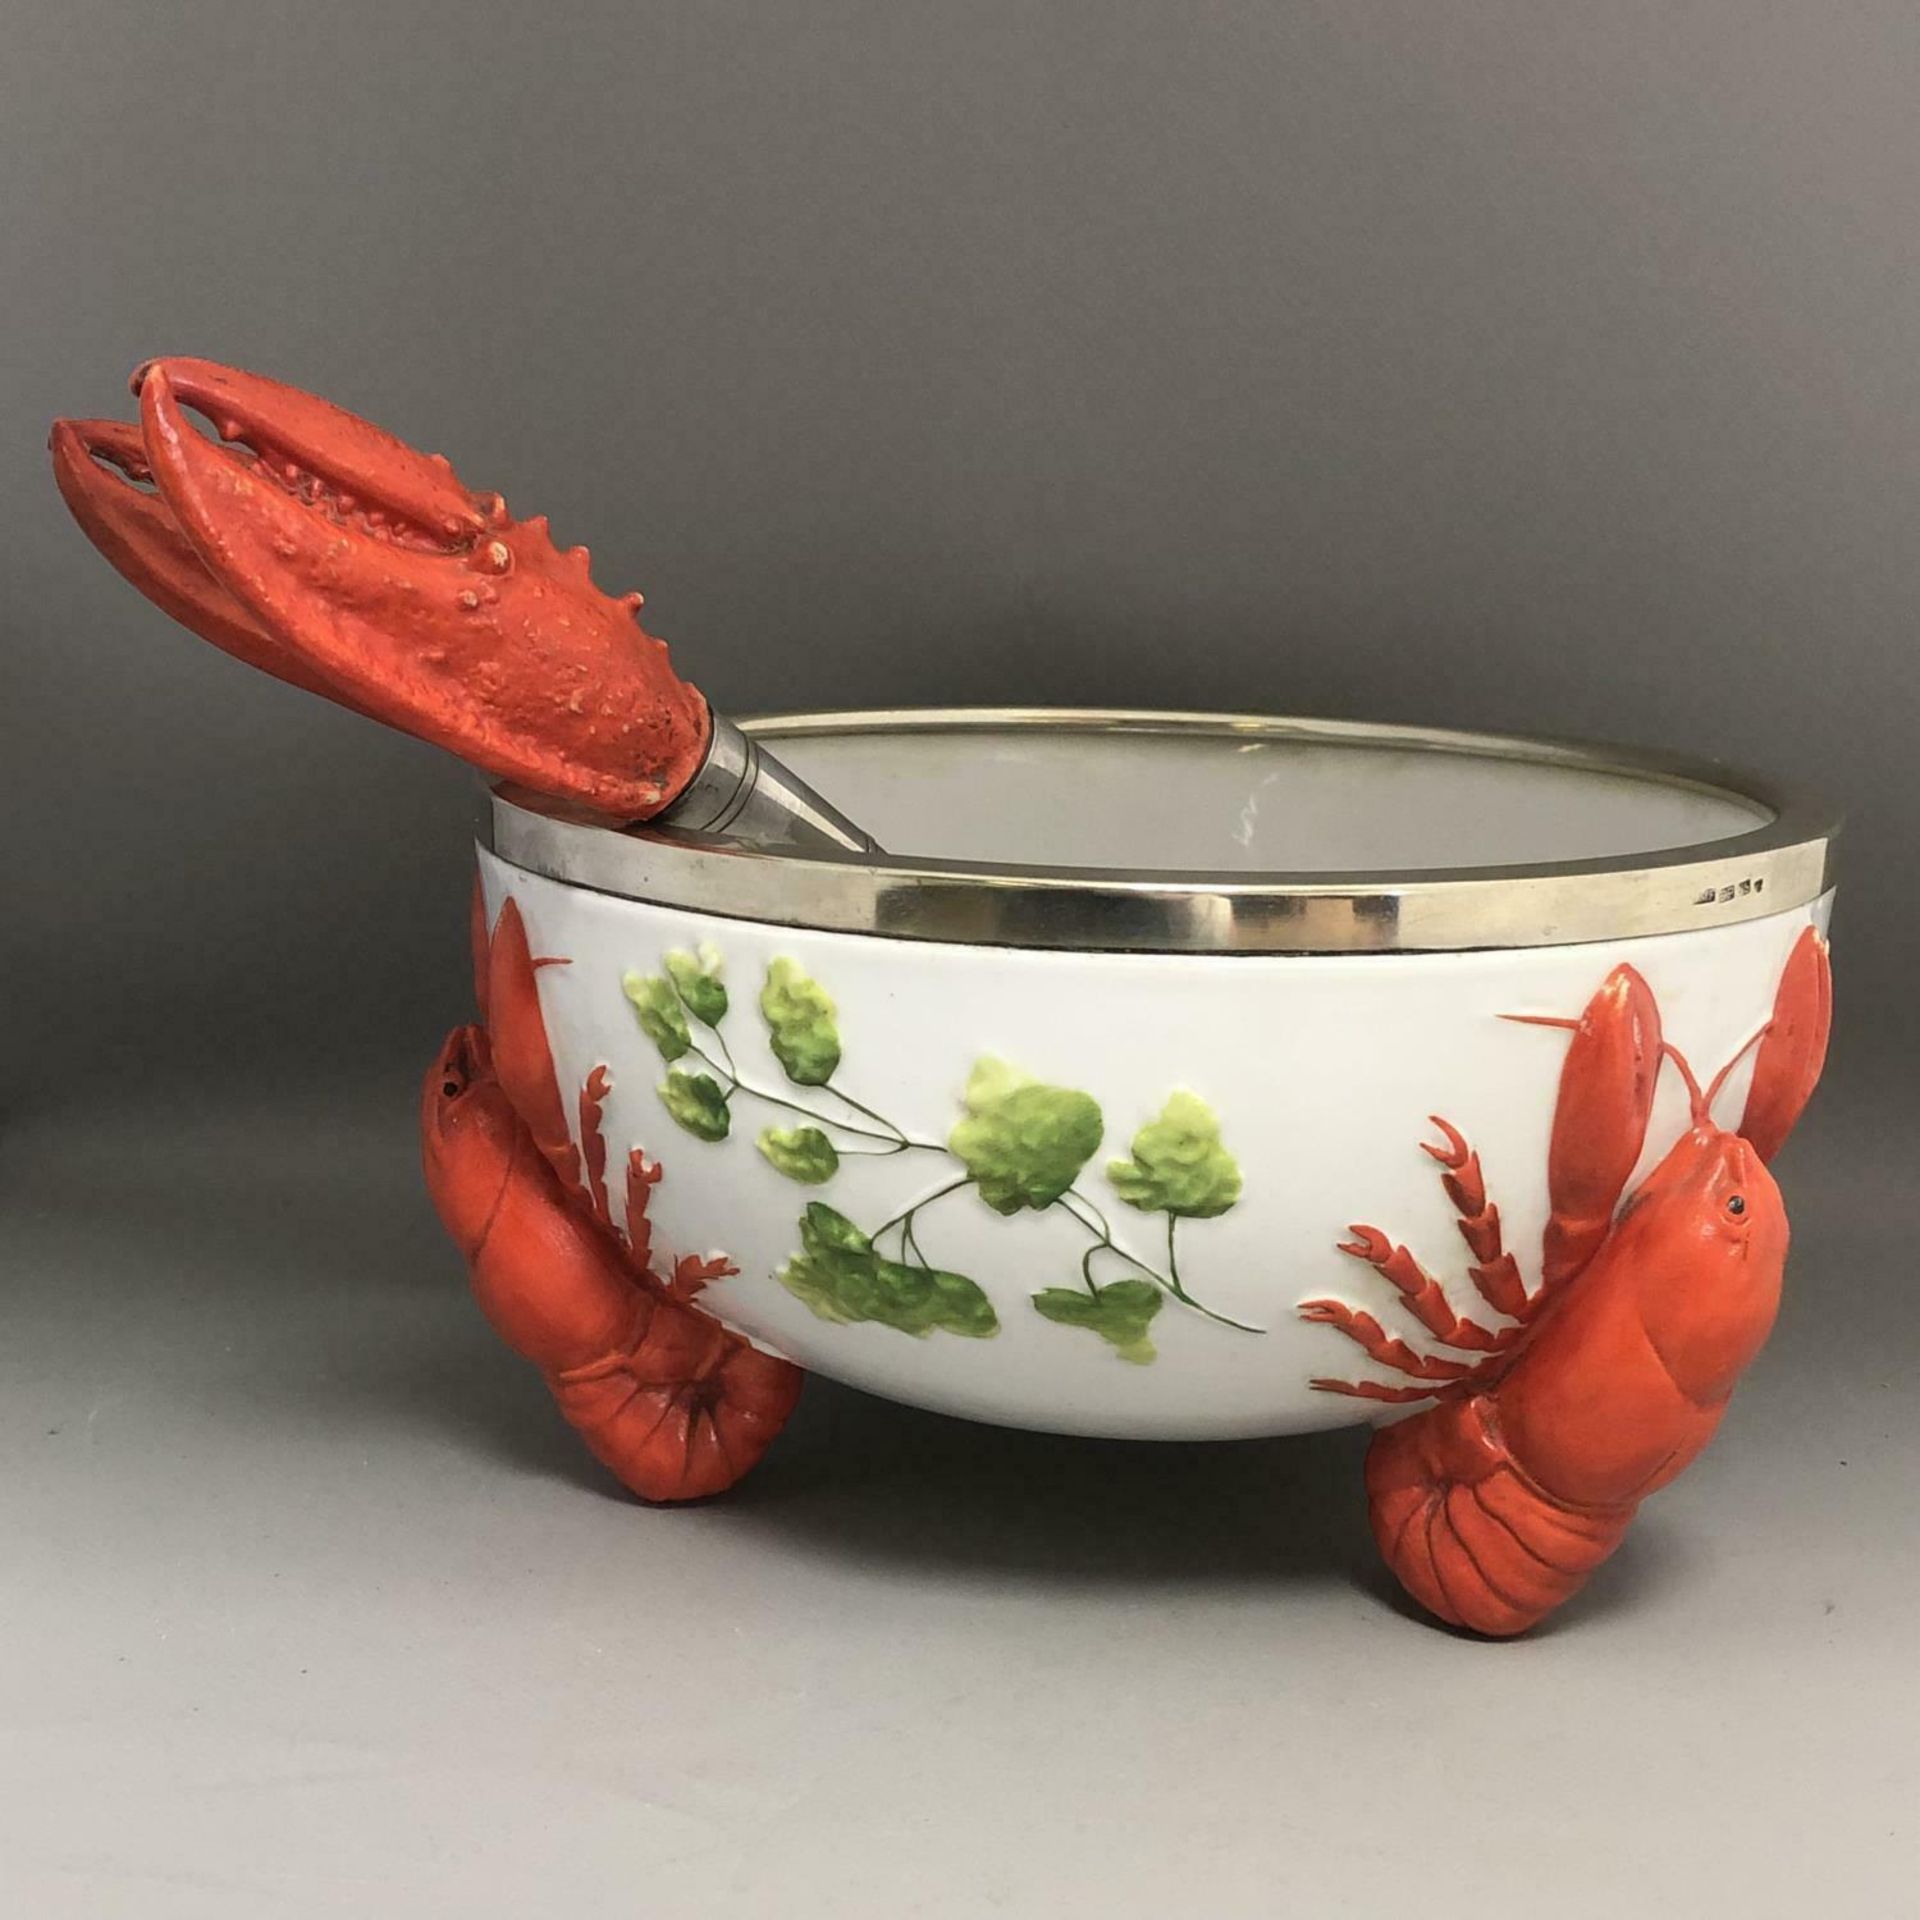 An Art Nouveau / Jugendstil WMF EPNS Rimmed Lobster Bowl with Claw Servers - Image 3 of 8